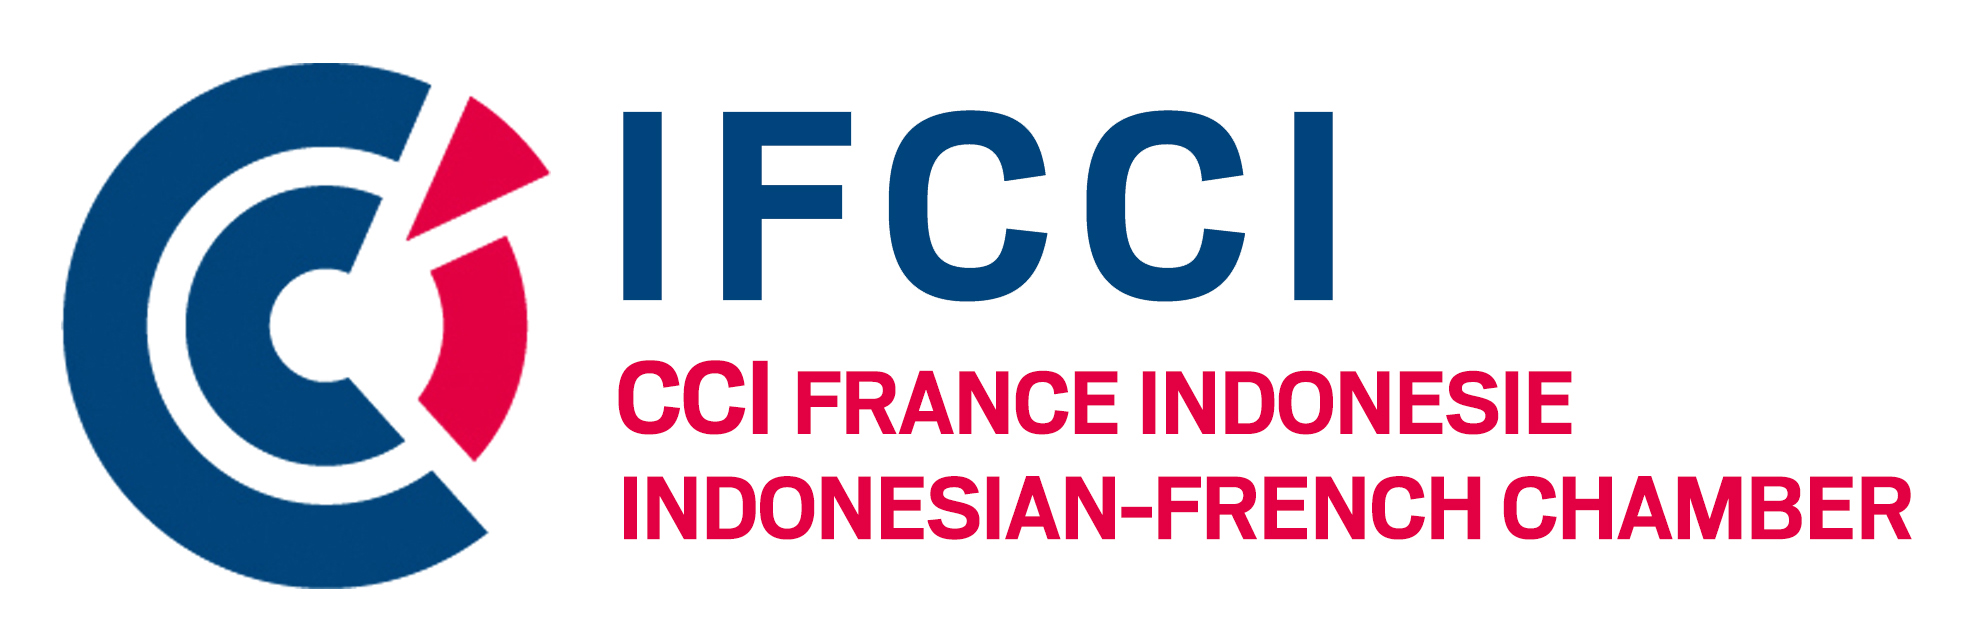 logo CCI France Indonesie